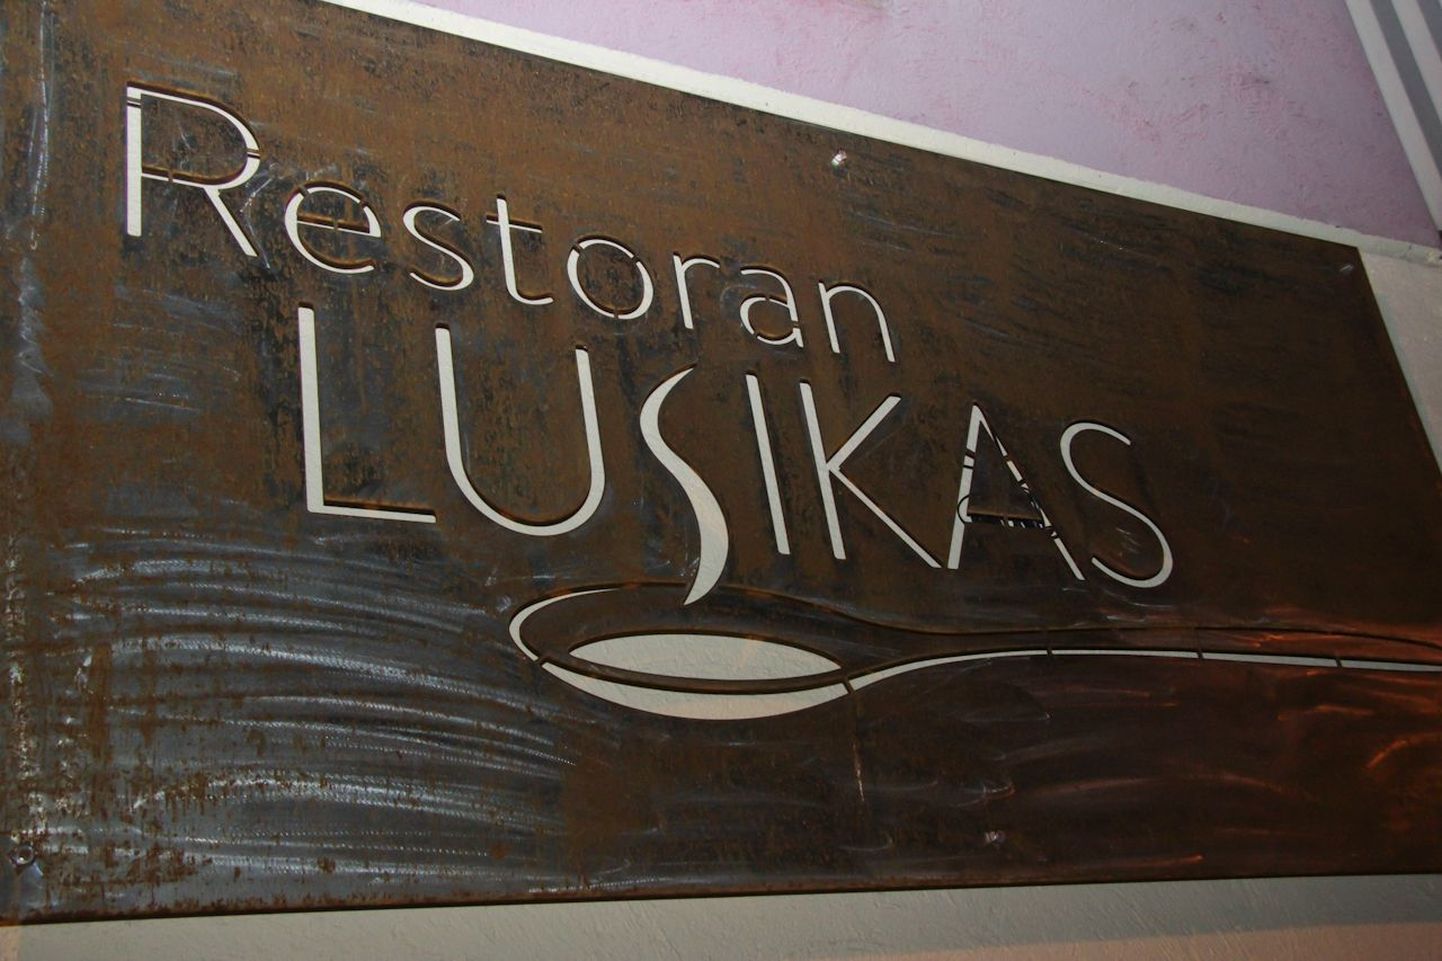 Restoran Lusikas.